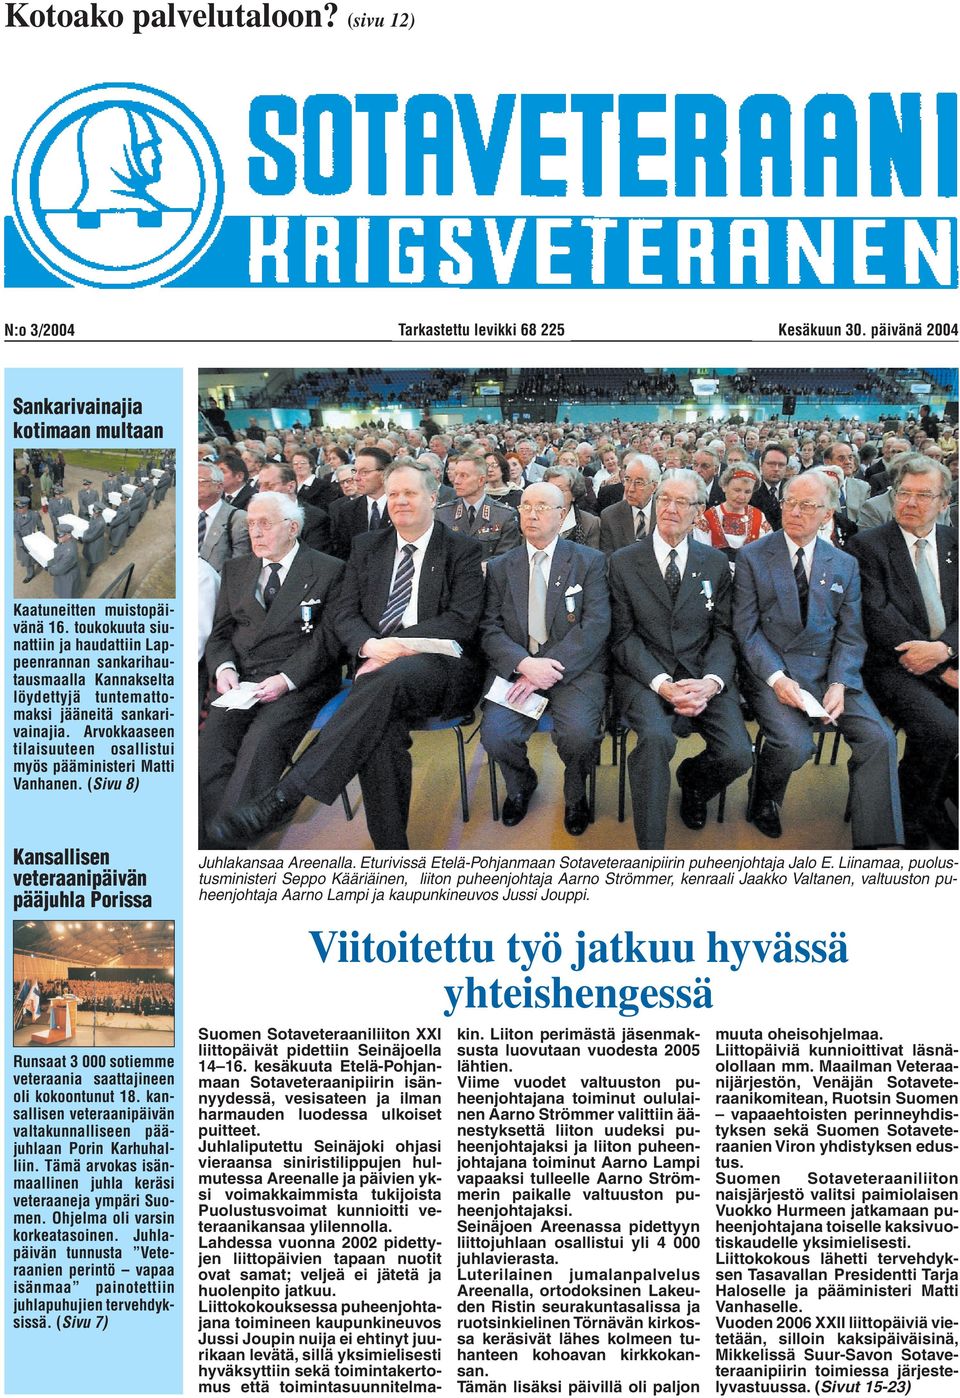 Arvokkaaseen tilaisuuteen osallistui myös pääministeri Matti Vanhanen. (Sivu 8) Kansallisen veteraanipäivän pääjuhla Porissa Runsaat 3 000 sotiemme veteraania saattajineen oli kokoontunut 18.